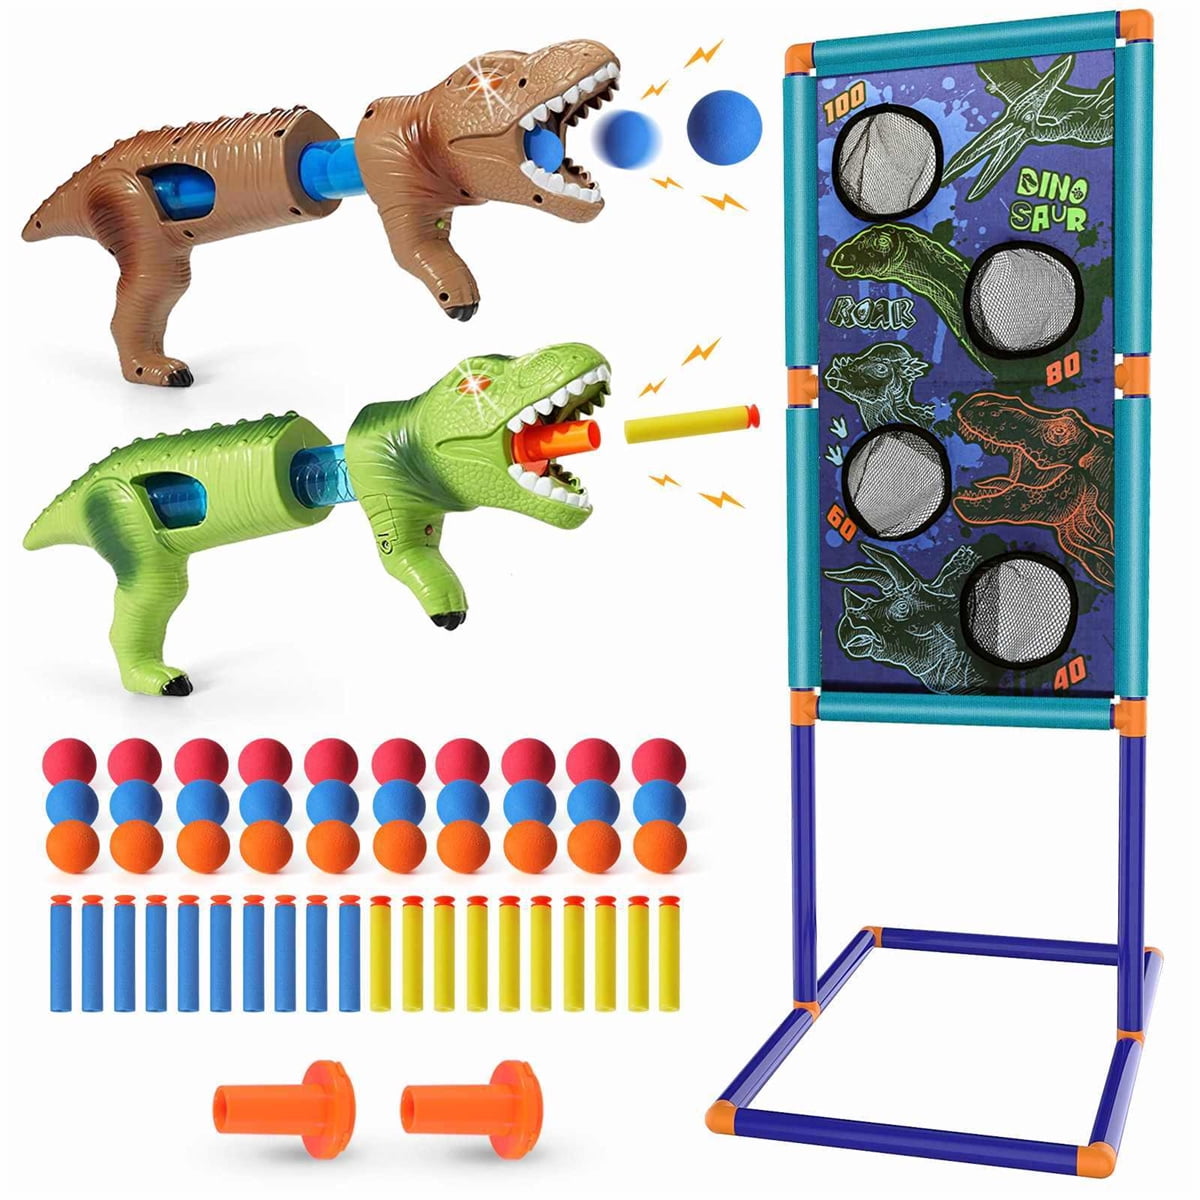 dinosaur shooting game